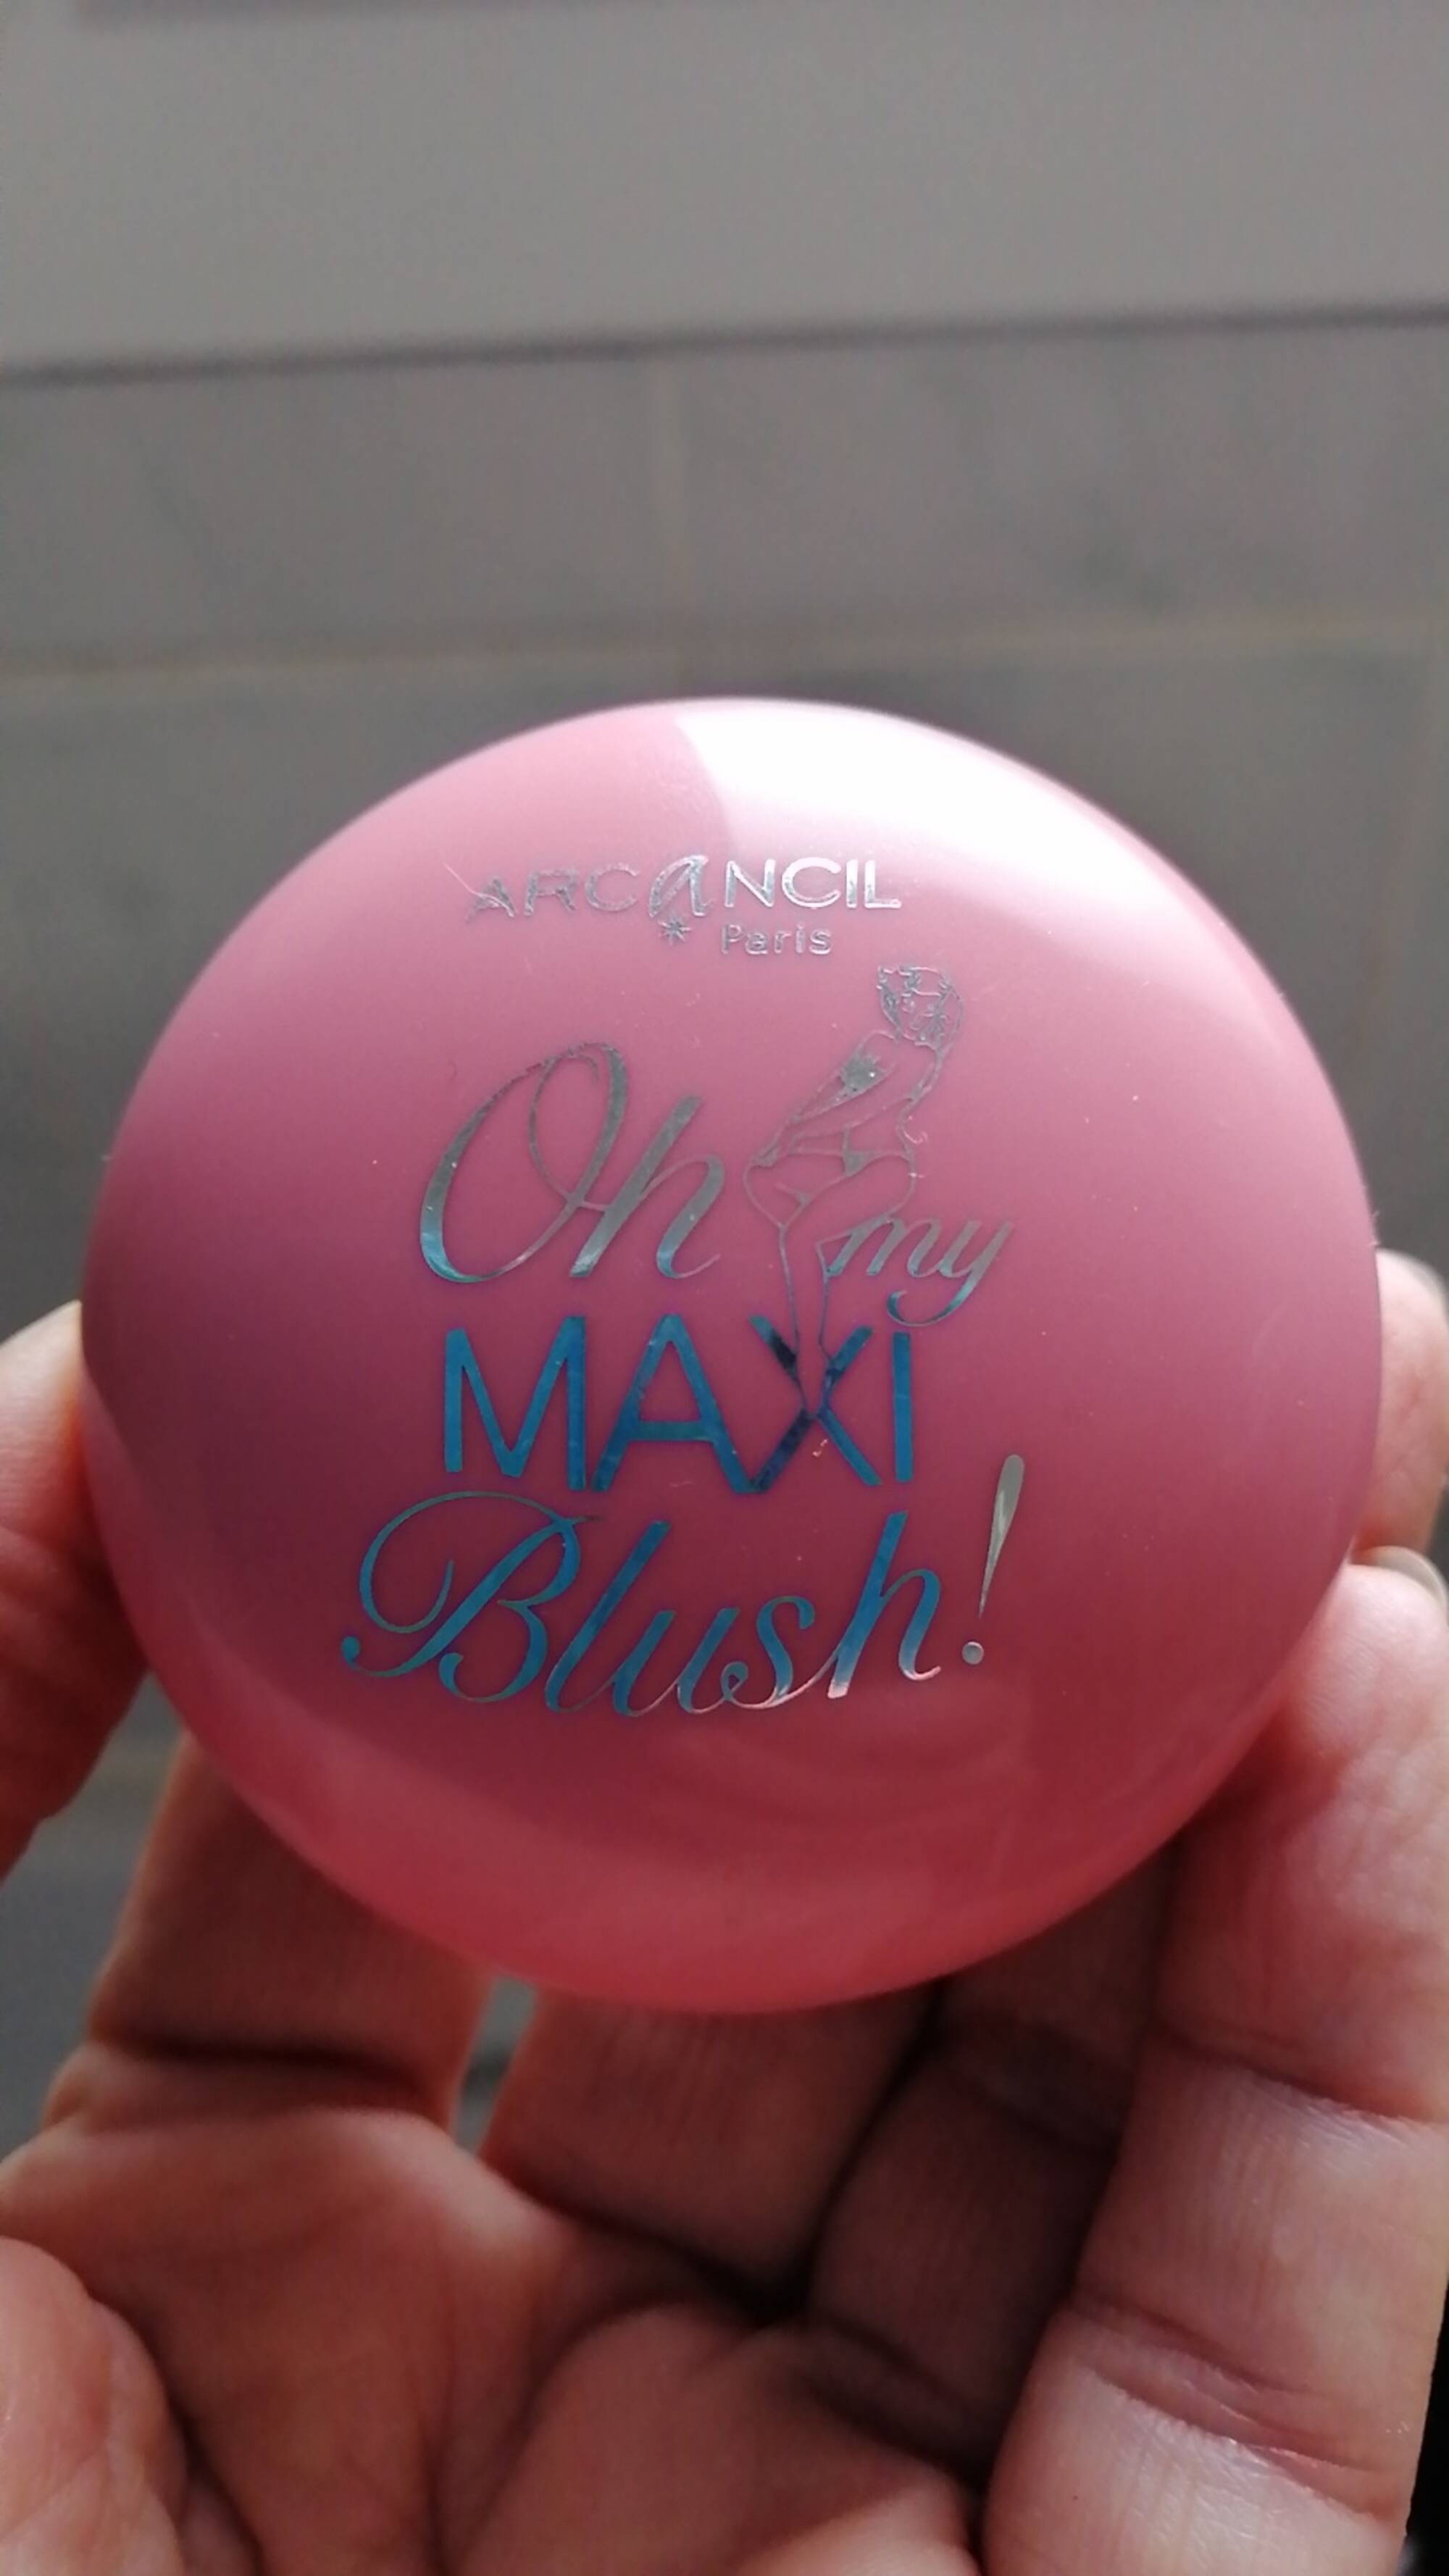 ARCANCIL - Oh may maxi blush